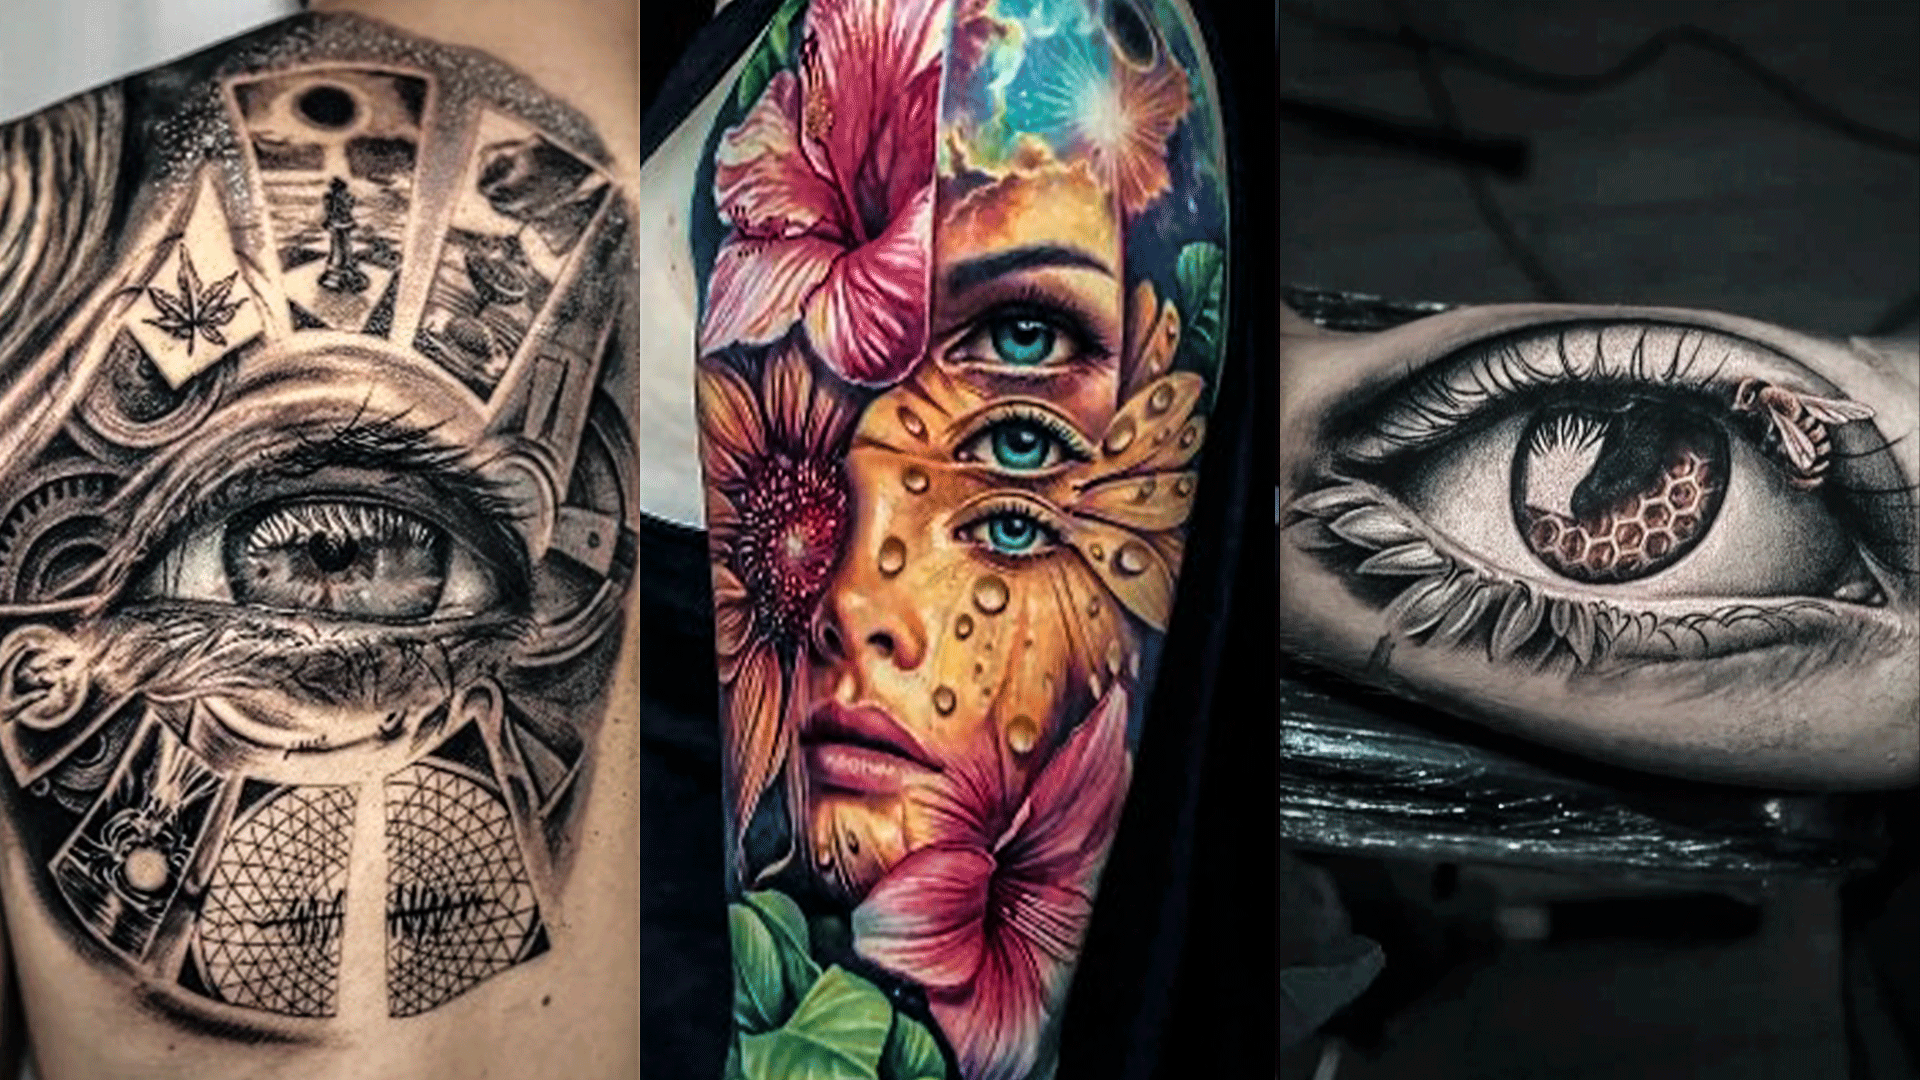 100 Demon Tattoo Designs || Best Tattoo Idea || Trigger Tattoo - YouTube